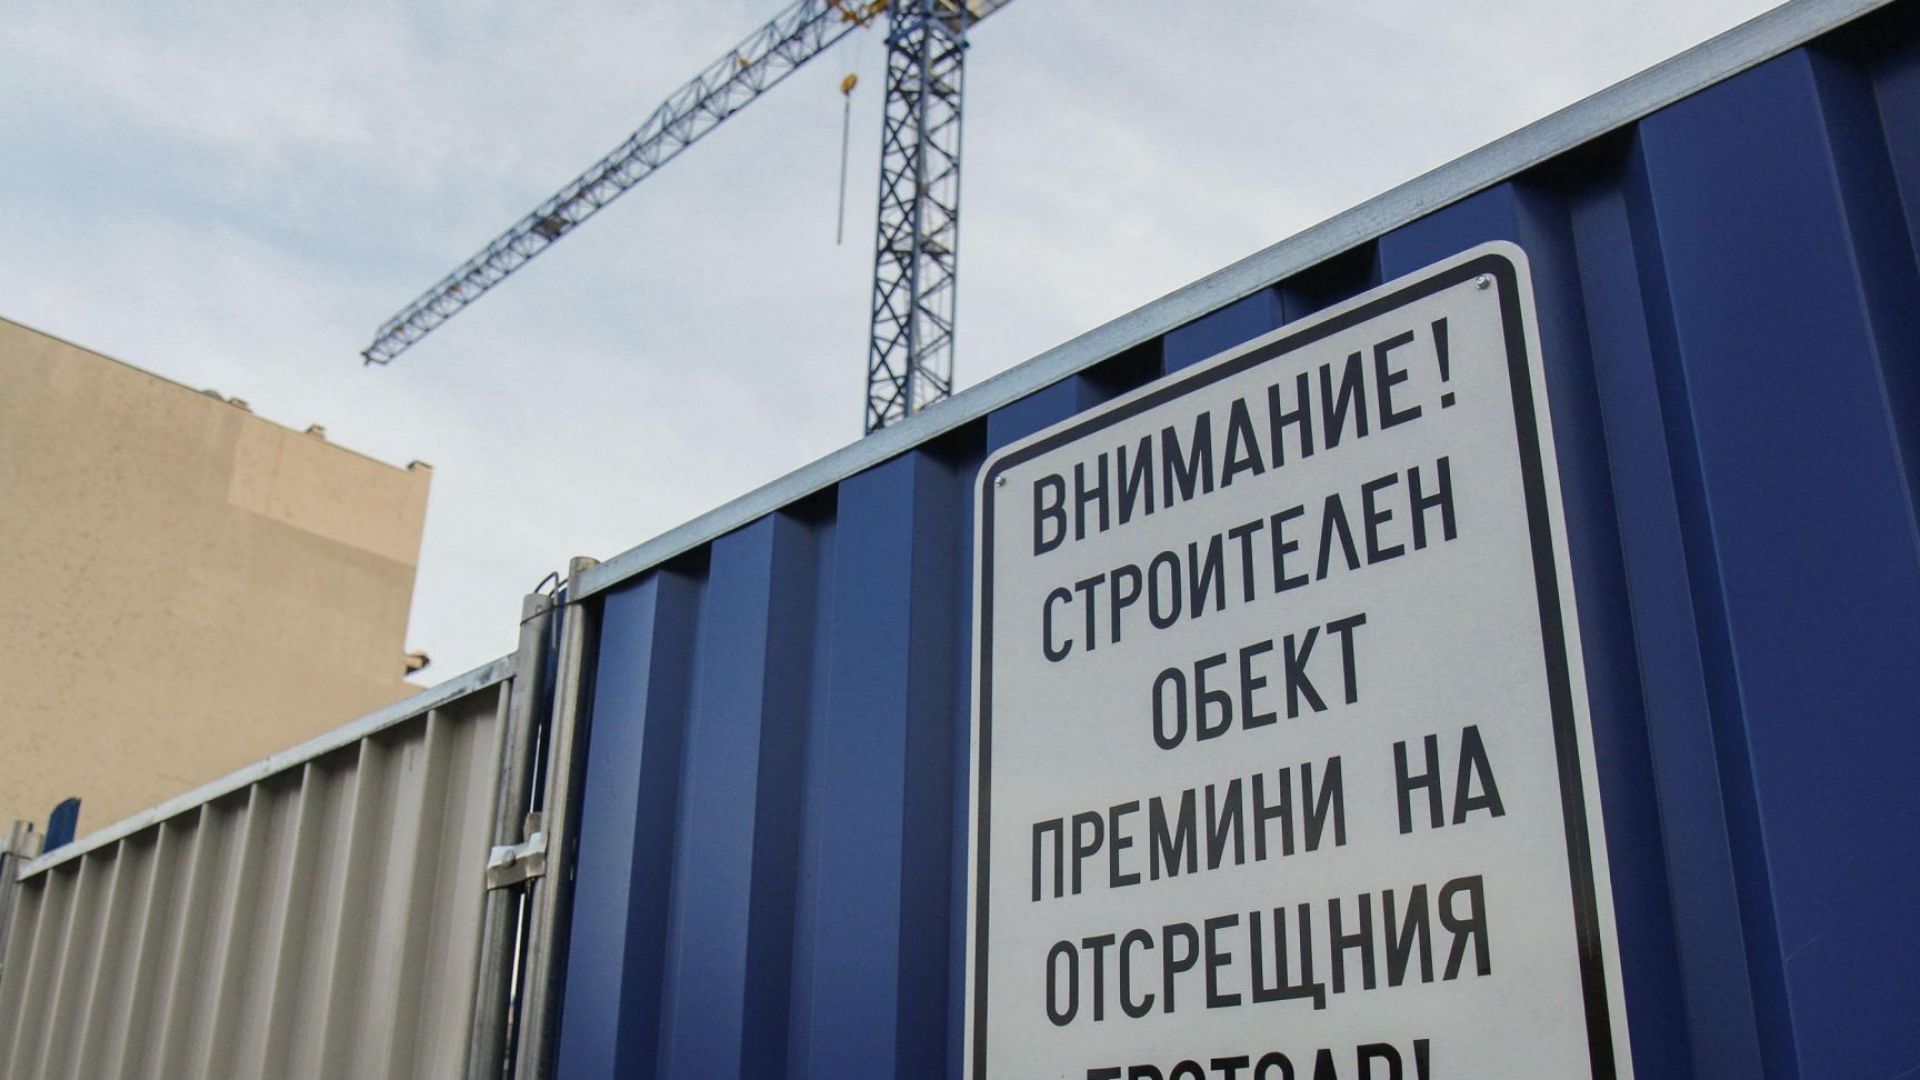 Пазарът в София: Търсят се нови жилища на високи етажи, но и къщи - заради двора